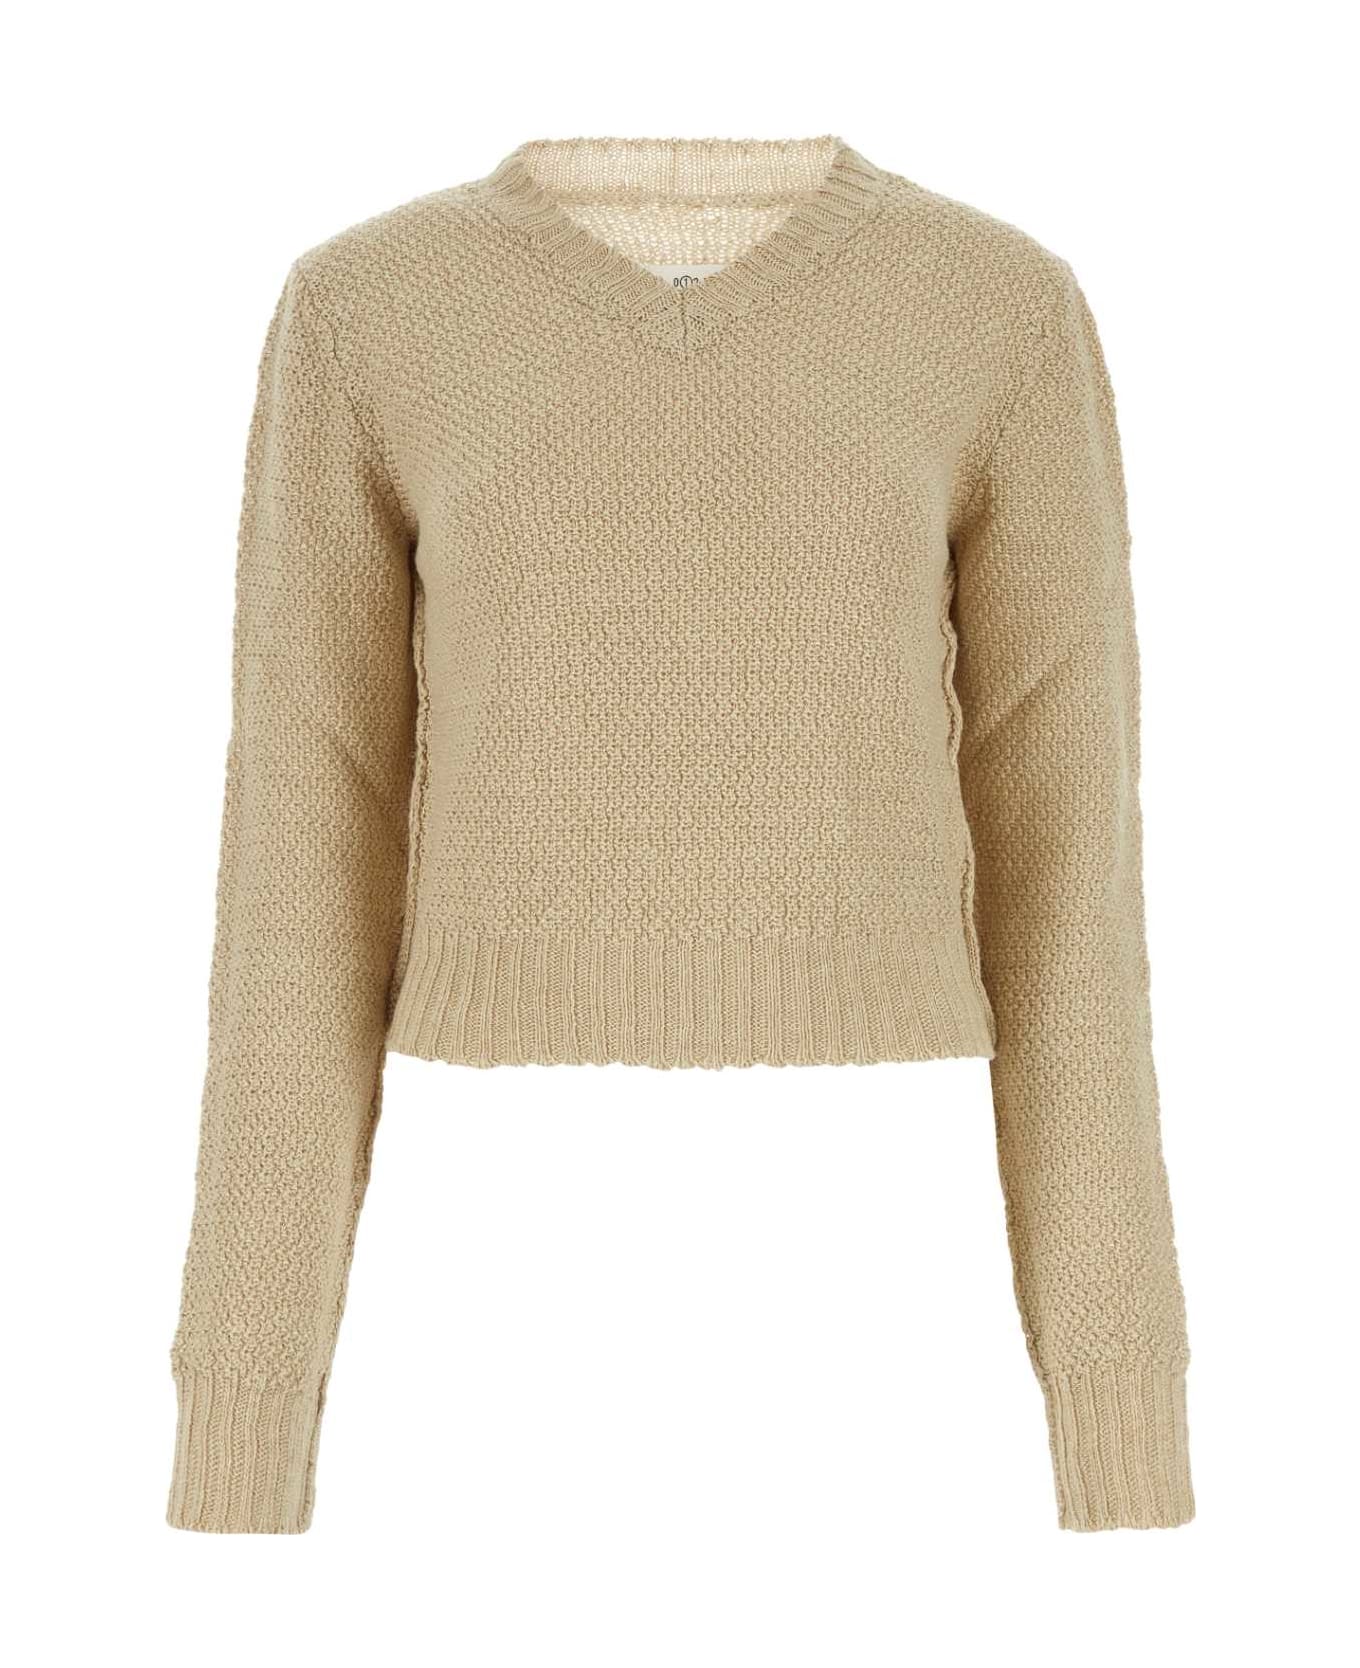 Maison Margiela Hemp Sweater - 113